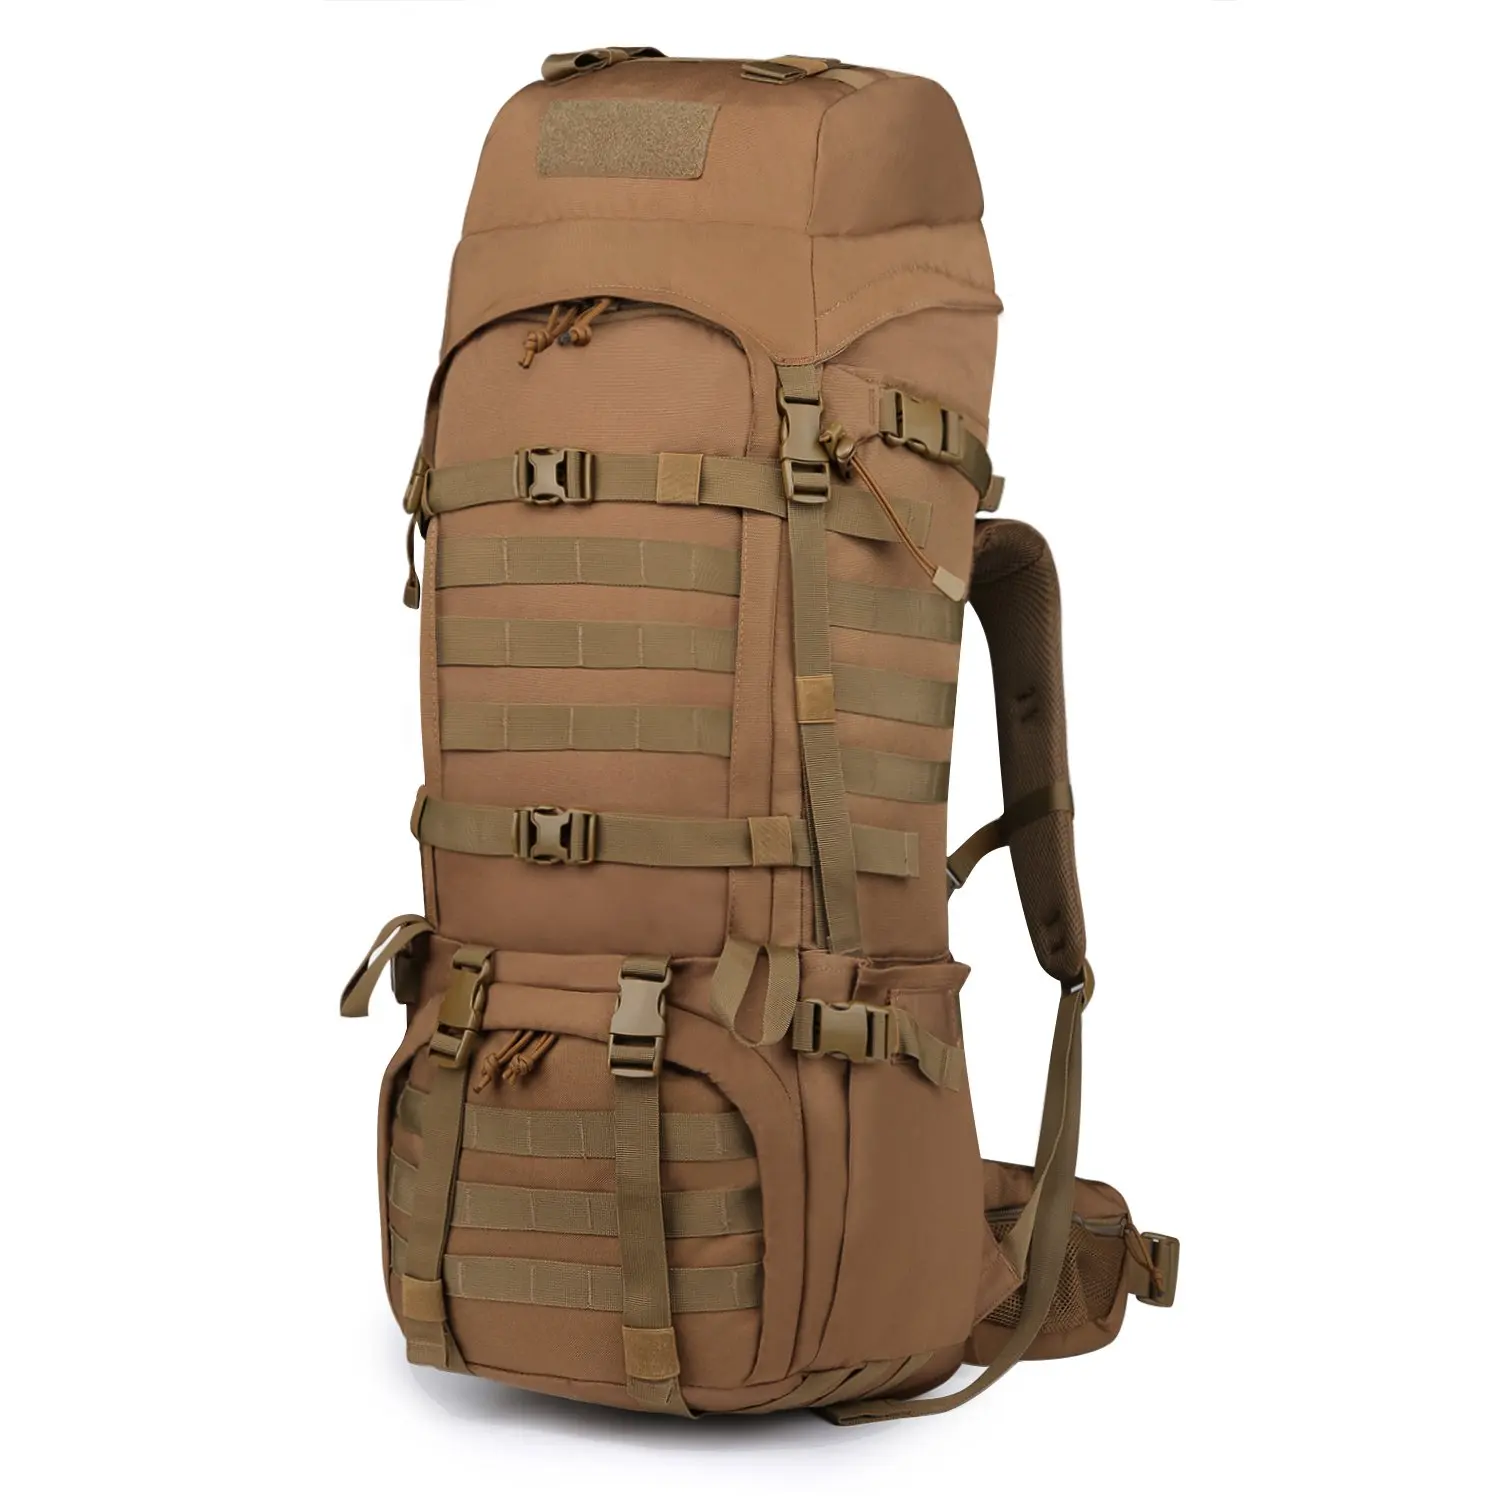 Backpack For Men Large Bushcraft Canvas Rucksack Bag Pack For Travel